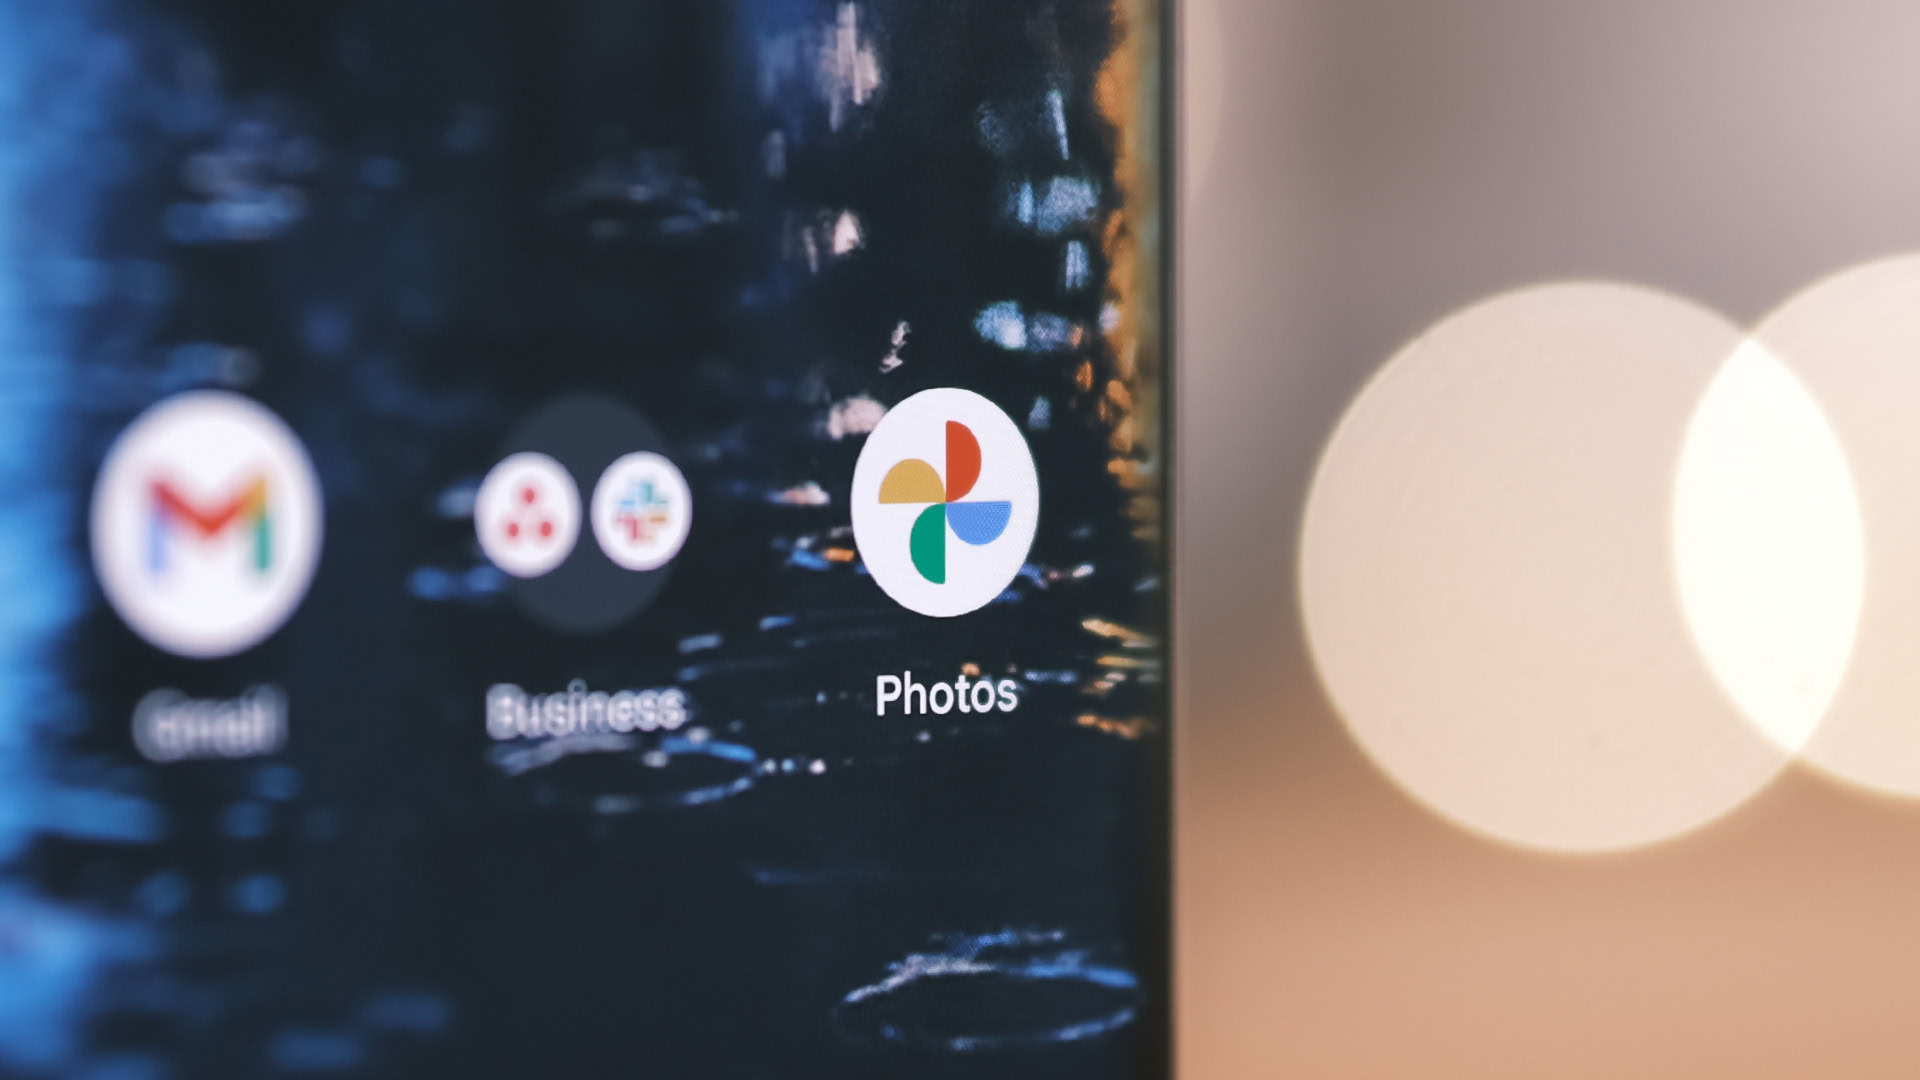 Google Photos app icon